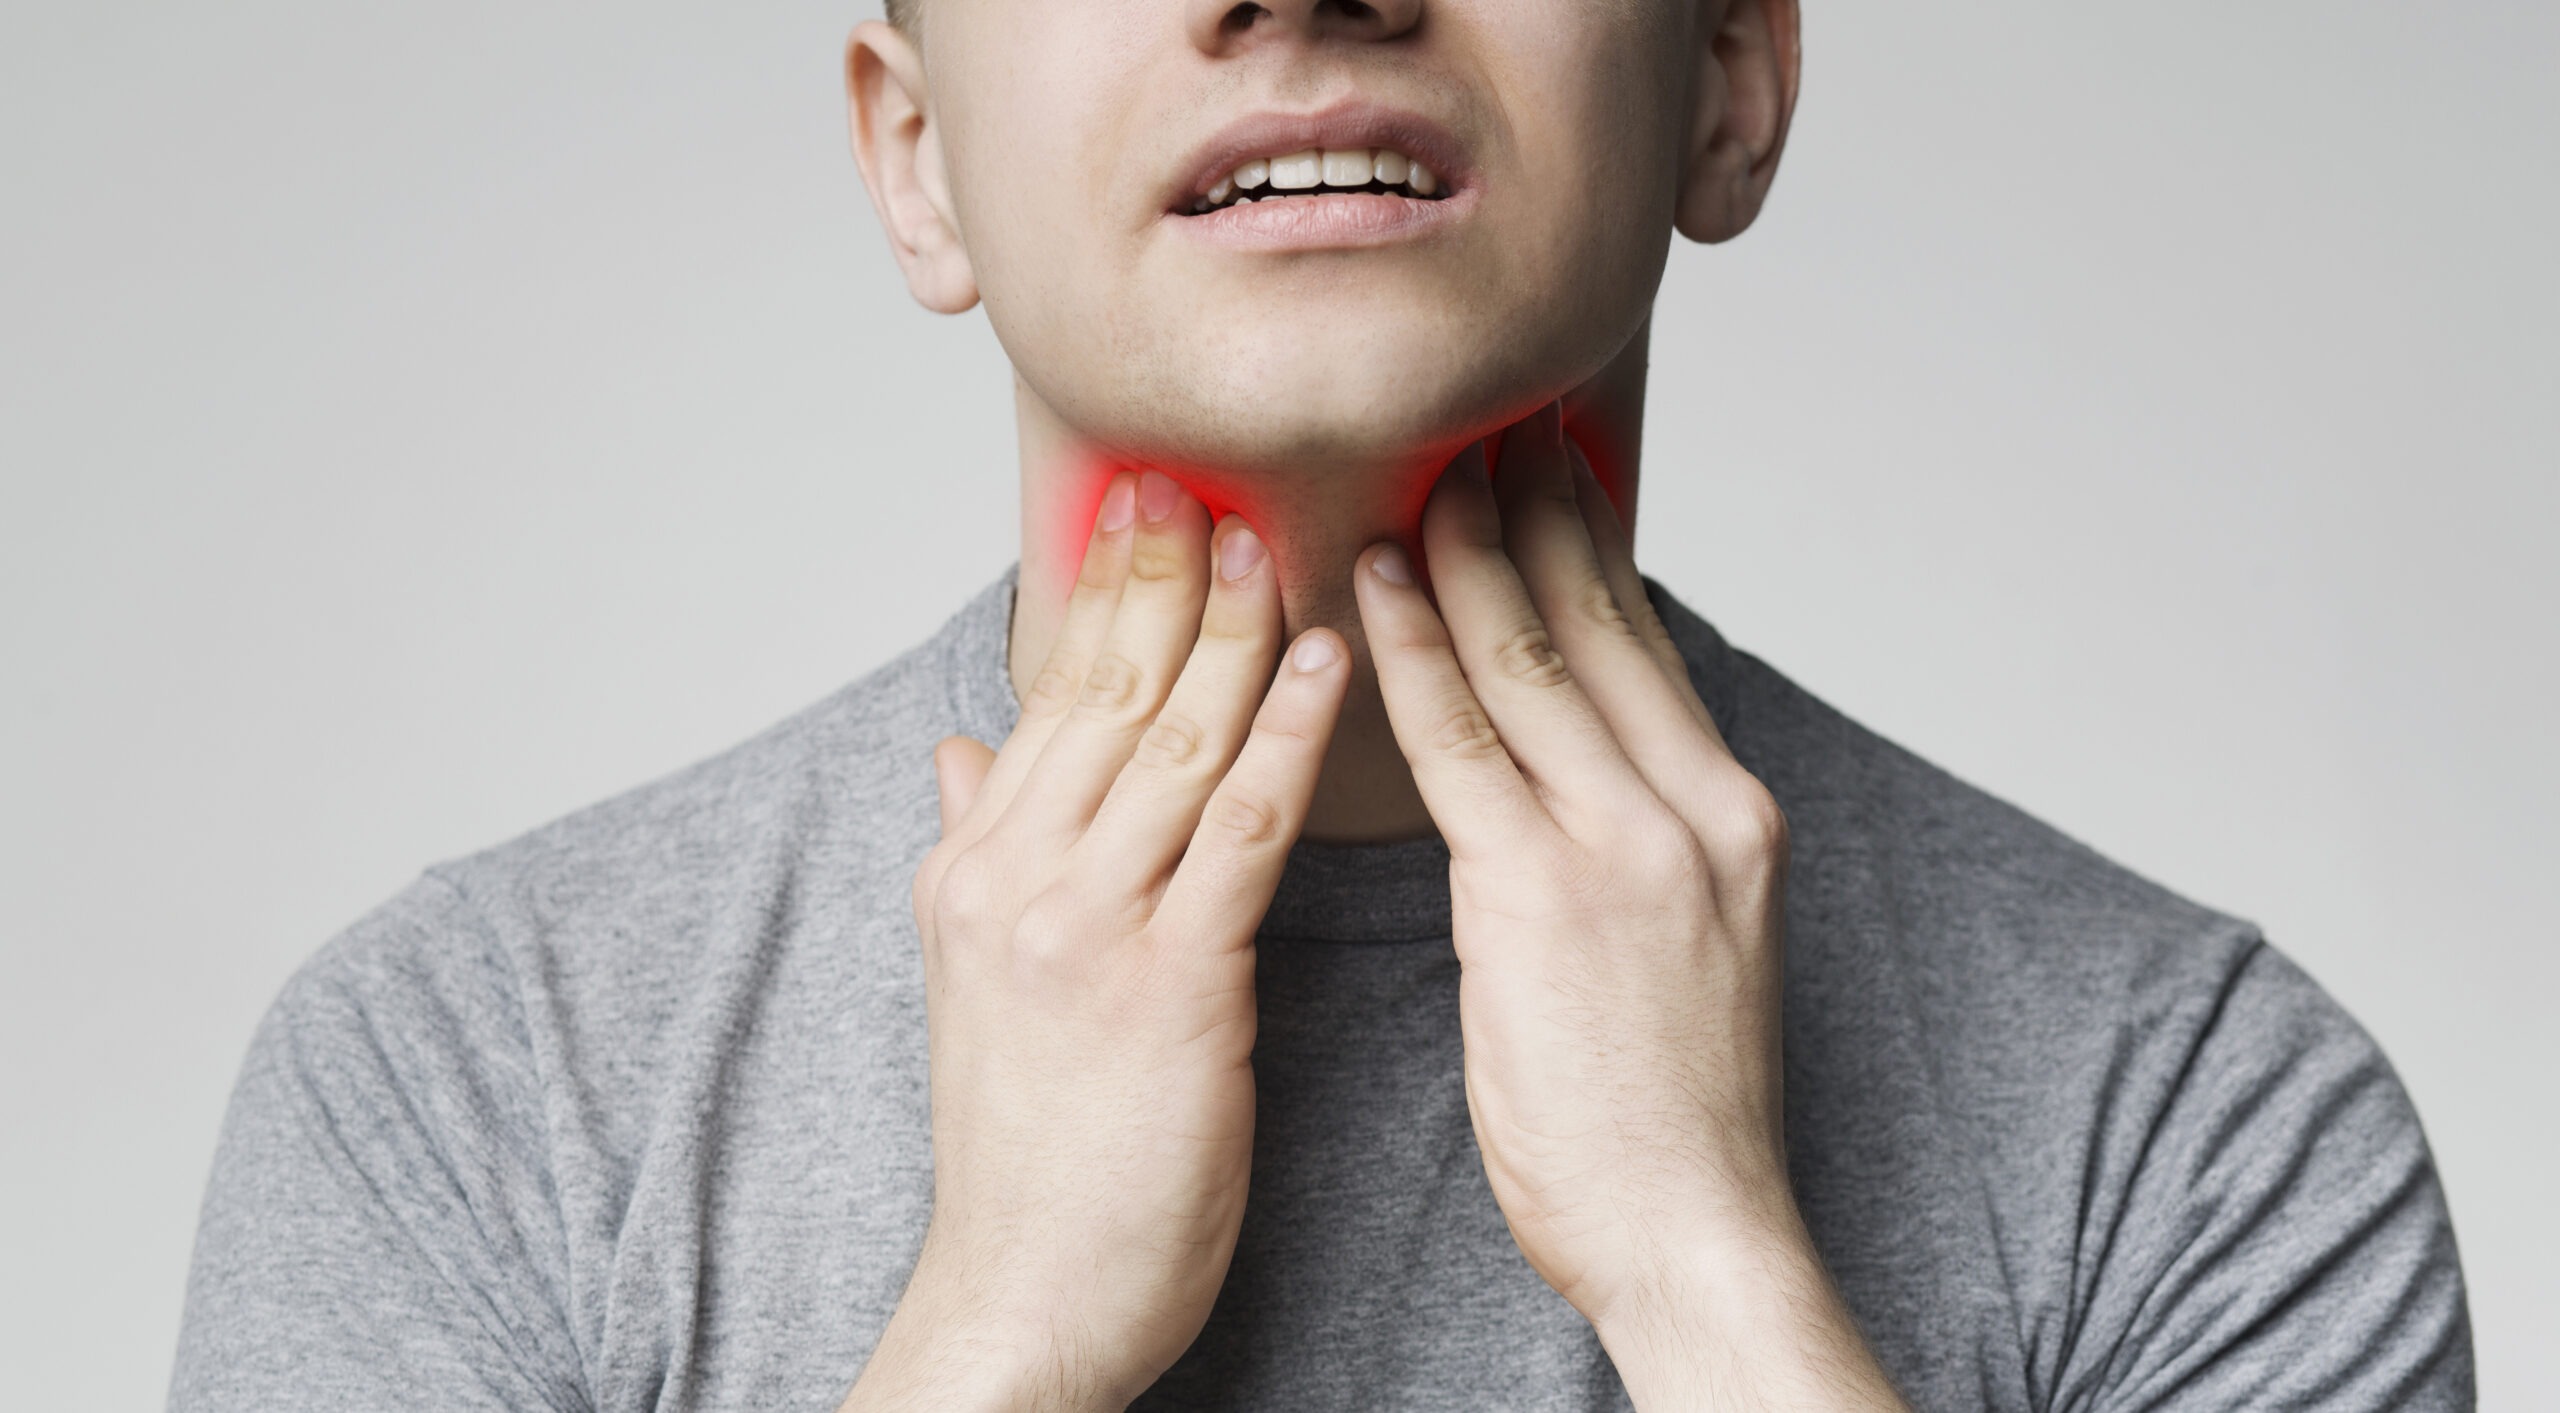 neck cancer symptoms in men